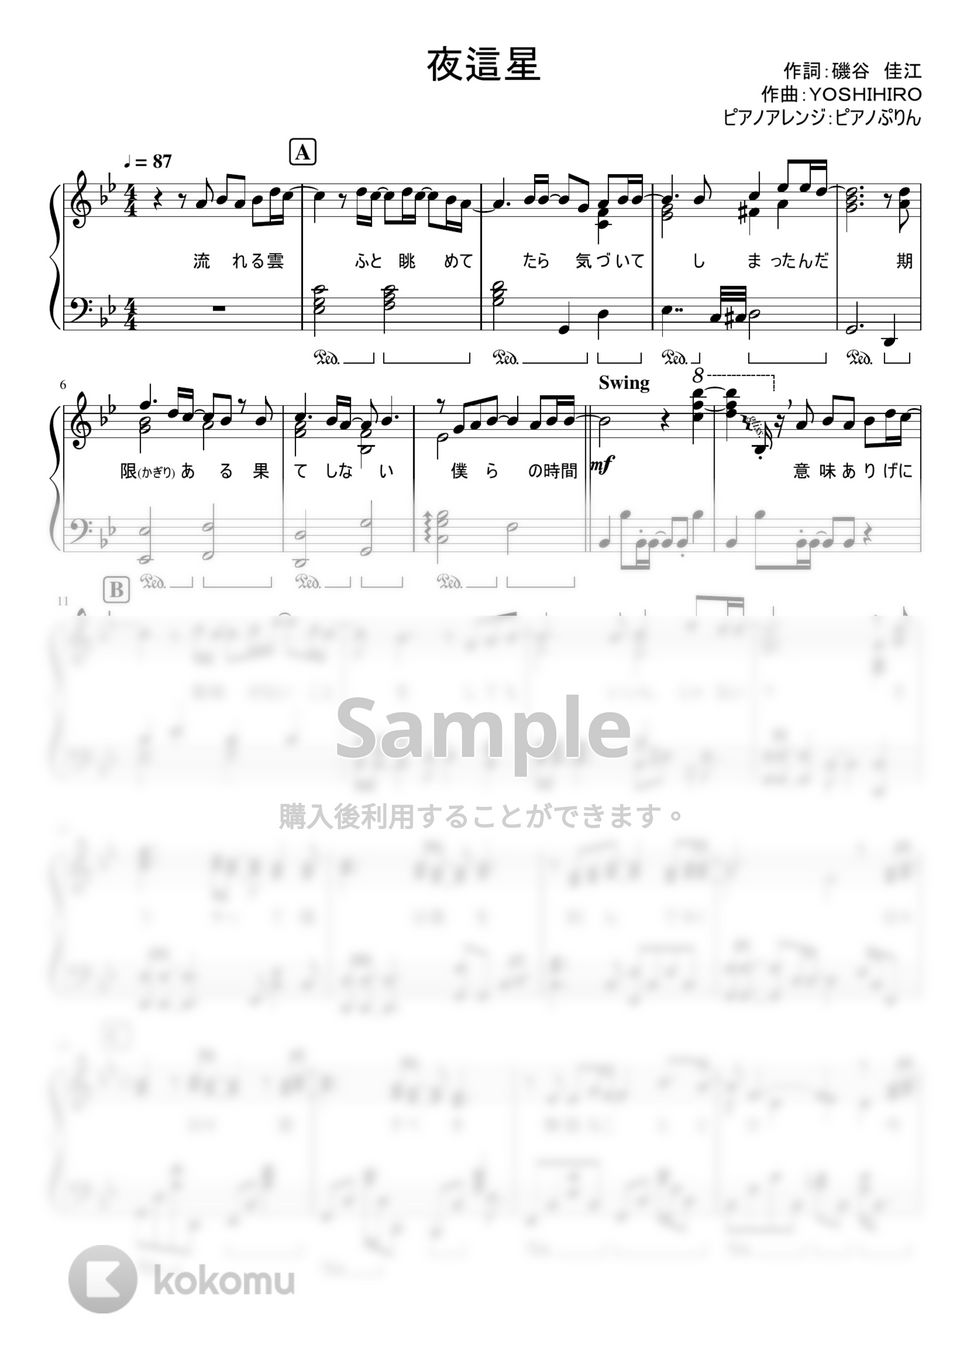 なにわ男子 - 夜這星 (1stアルバム「1st Love」収録曲。) by ピアノぷりん